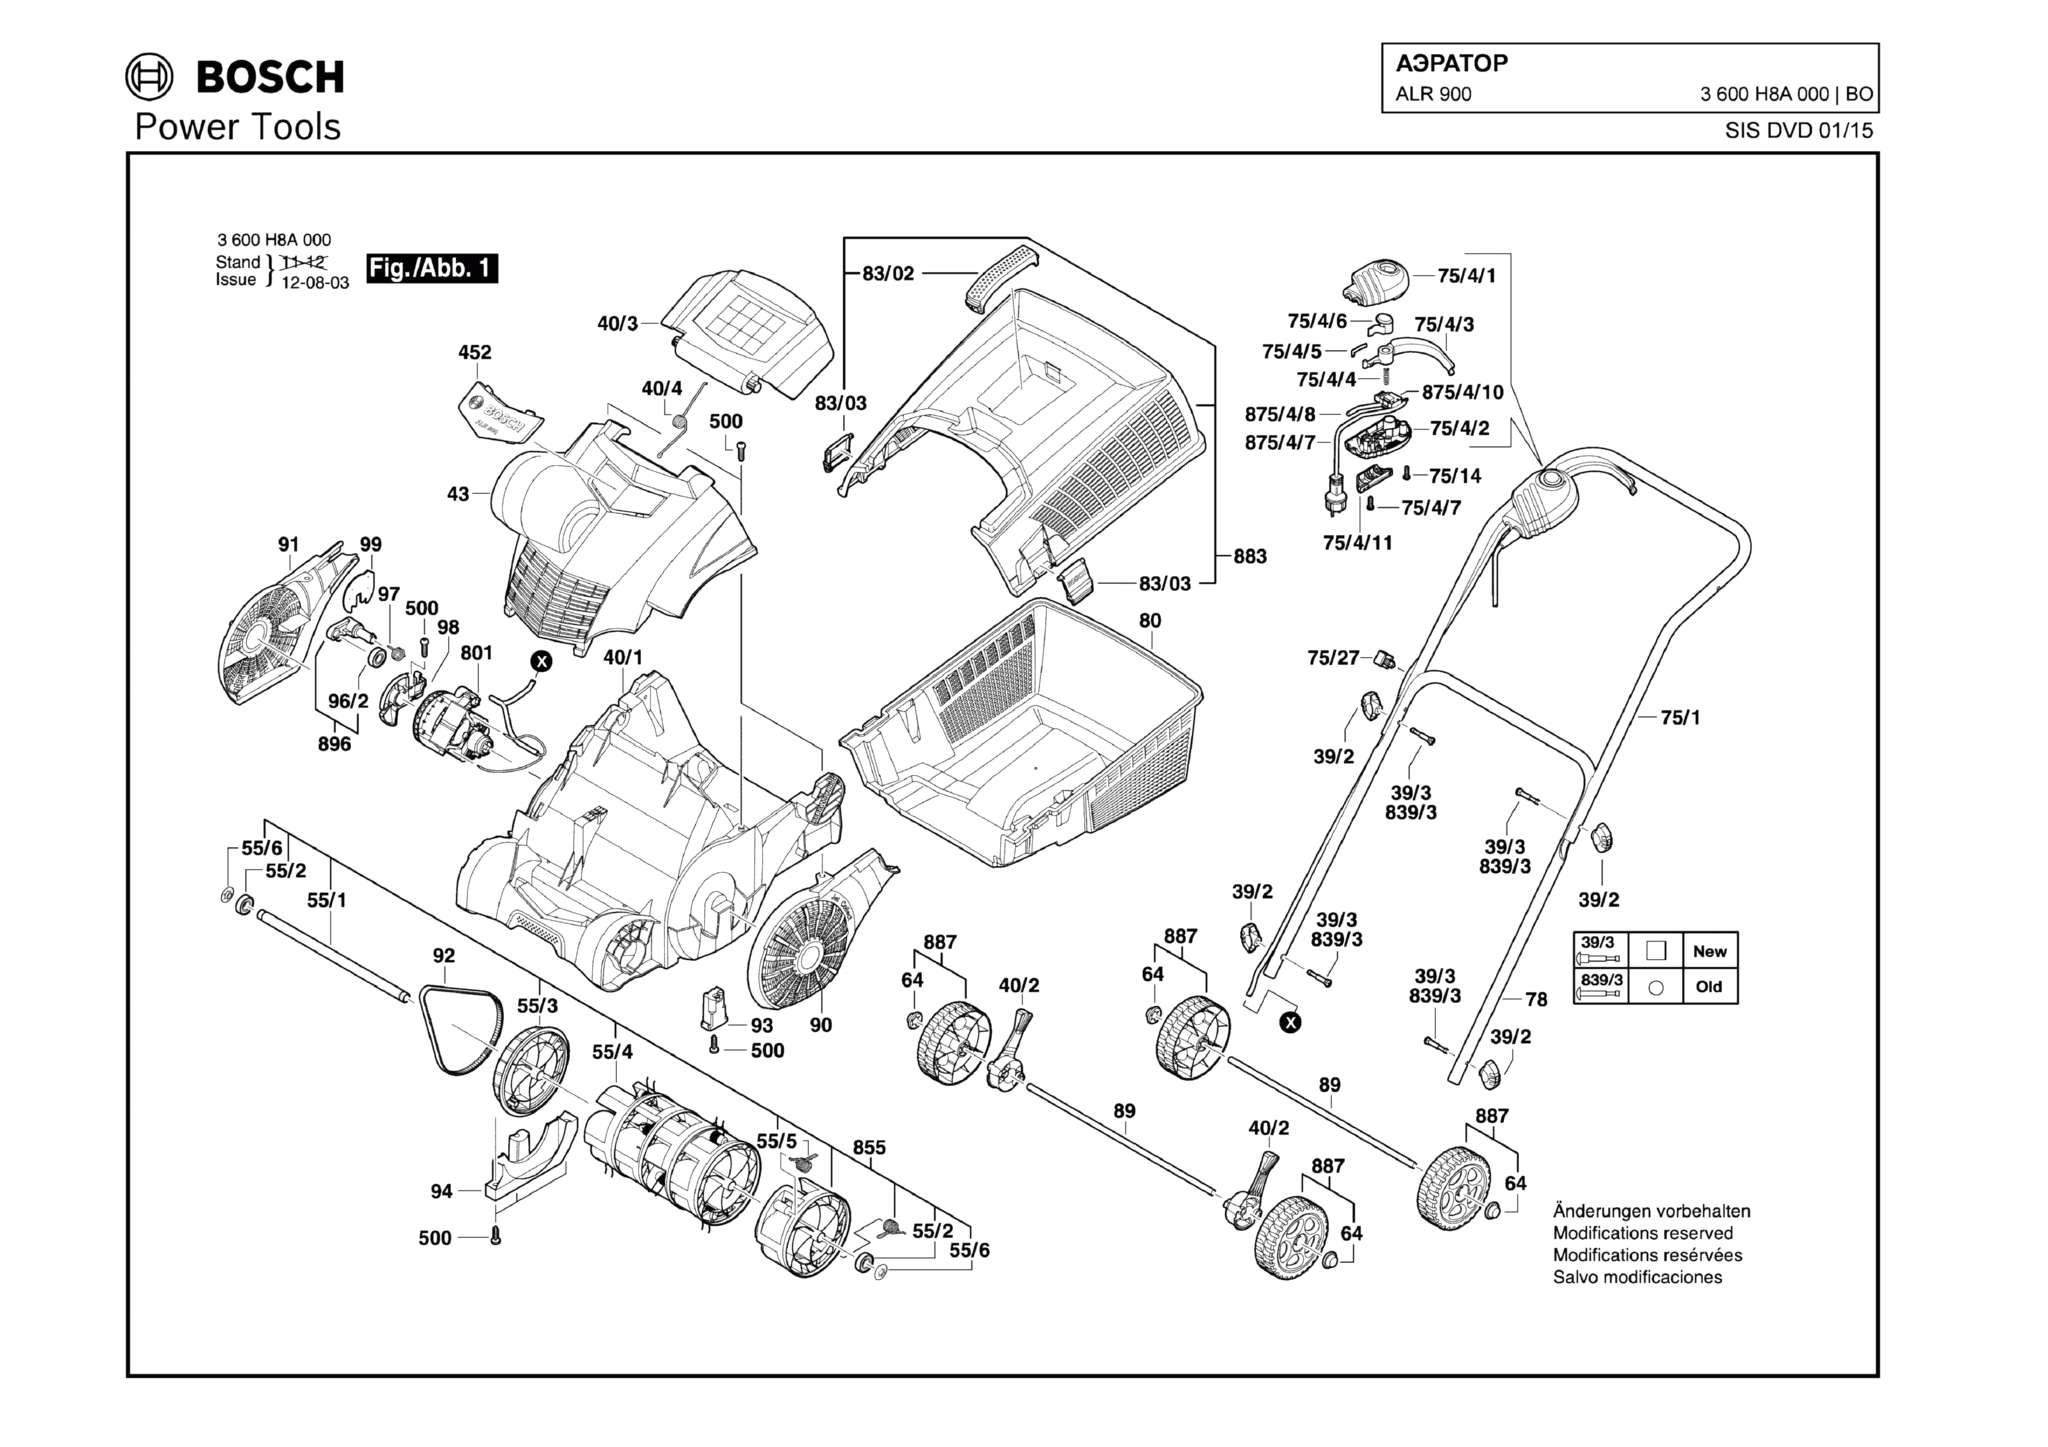 Запчасти, схема и деталировка Bosch ALR 900 (ТИП 3600H8A000)